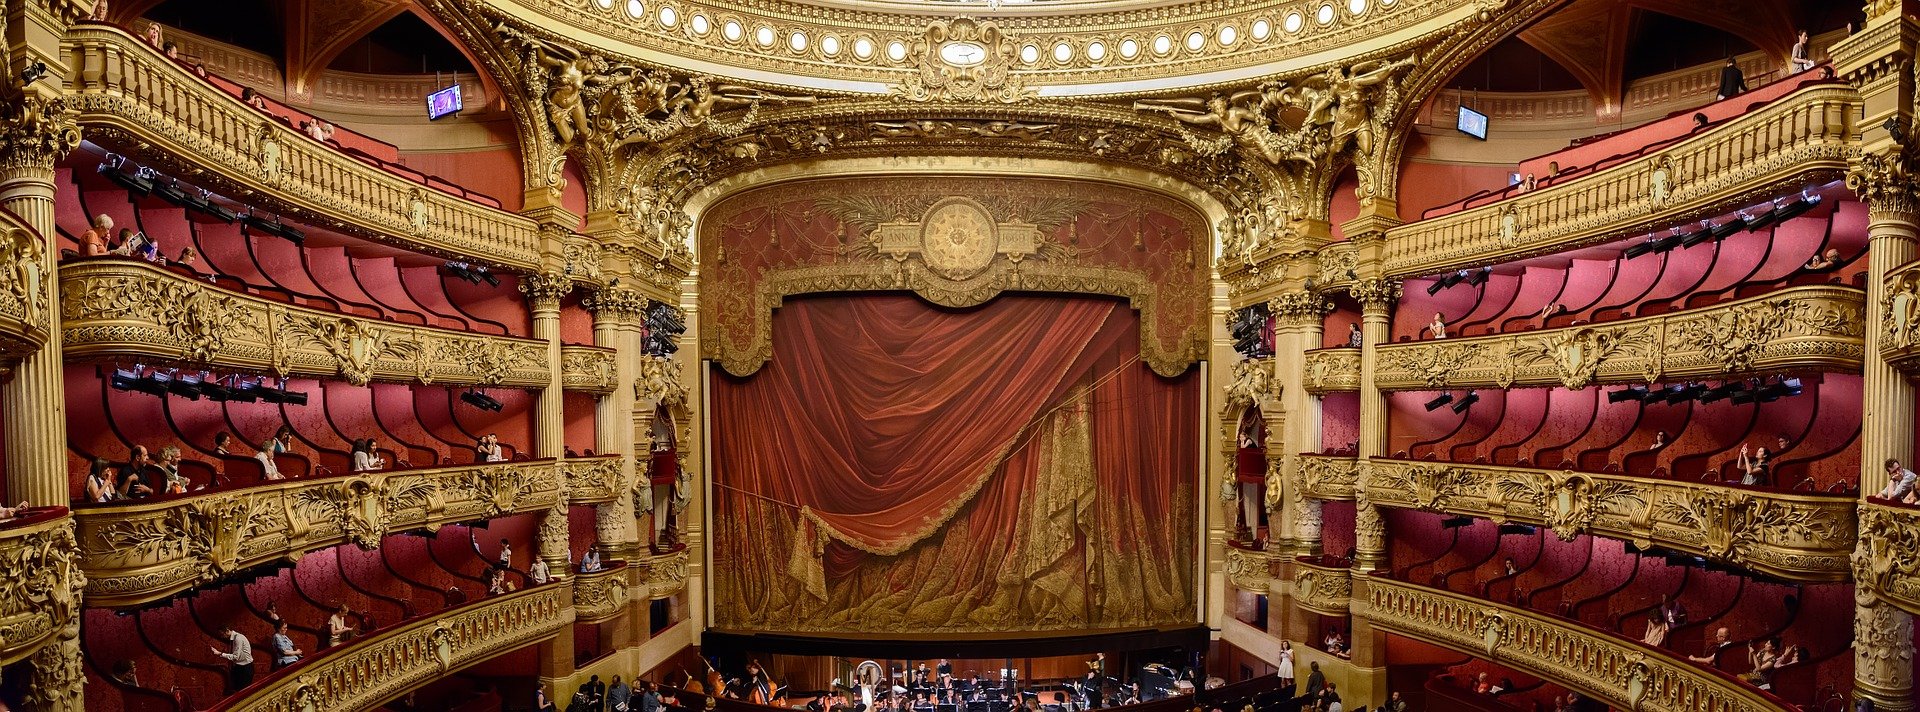 divadlo-opera-1248769-freepixabay